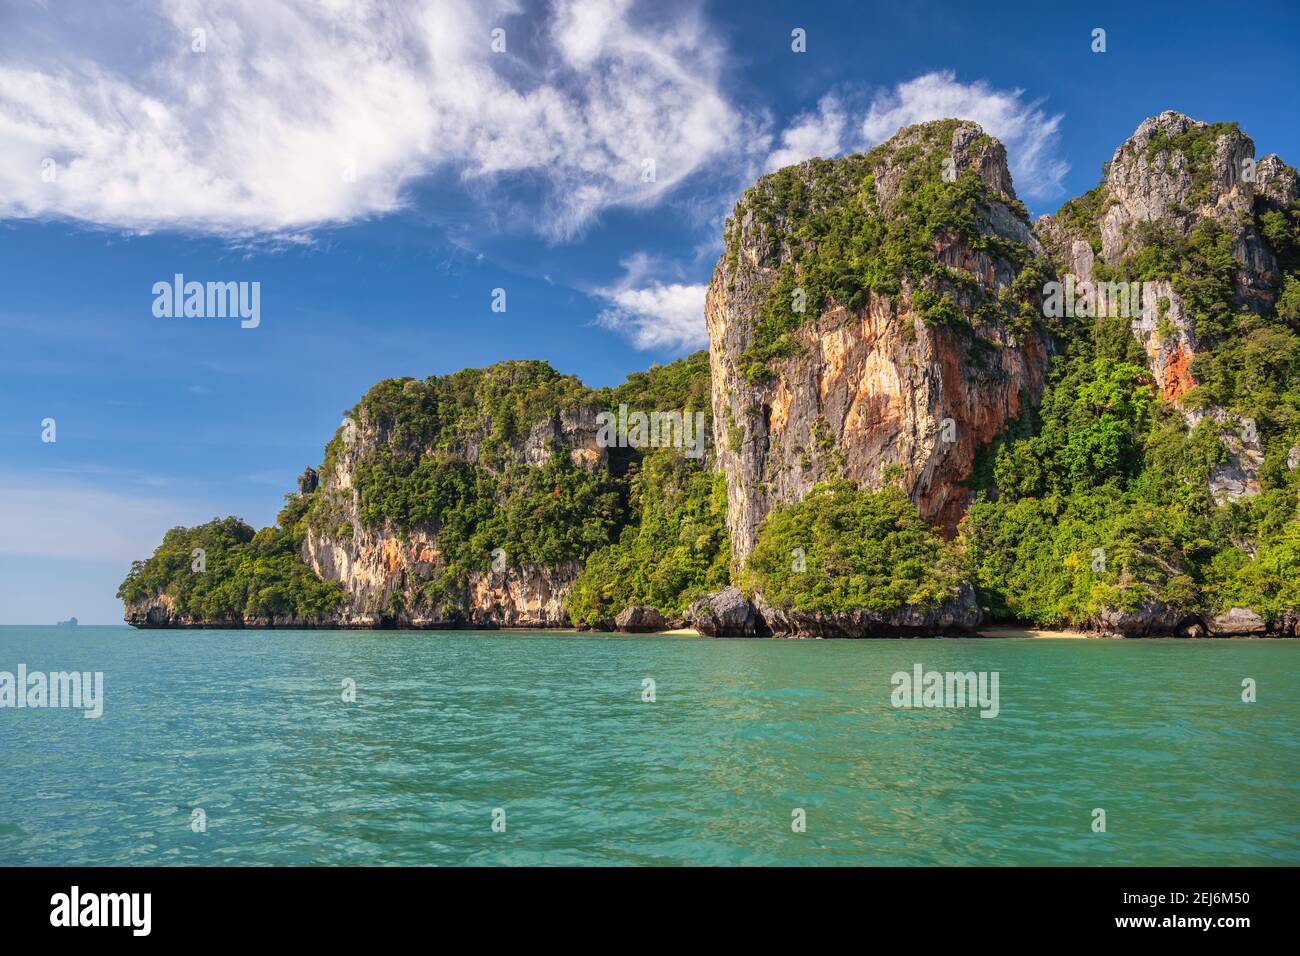 Vue sur les îles tropicales avec l'eau de mer bleu océan à Railay Beach, Krabi Thaïlande paysage nature Banque D'Images